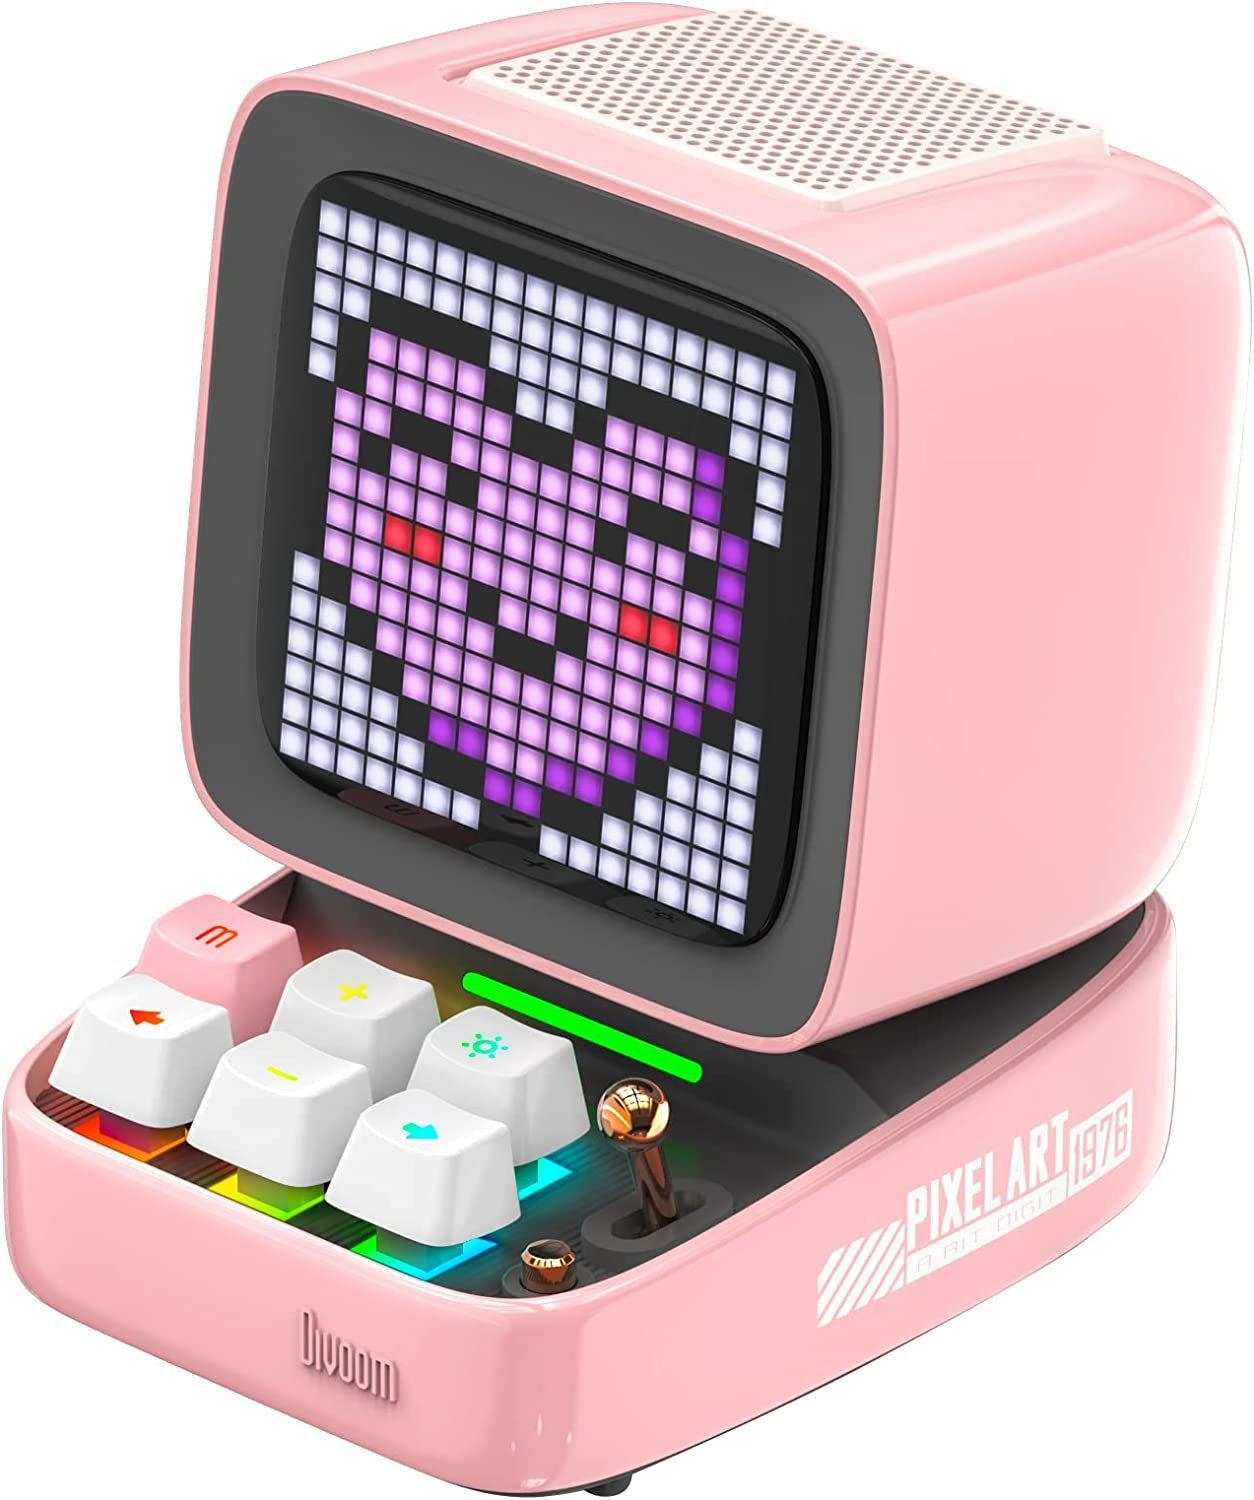 Divoom Pixel Lautsprecher rosa Lautsprecher DIVOOM - Pro Ditoo